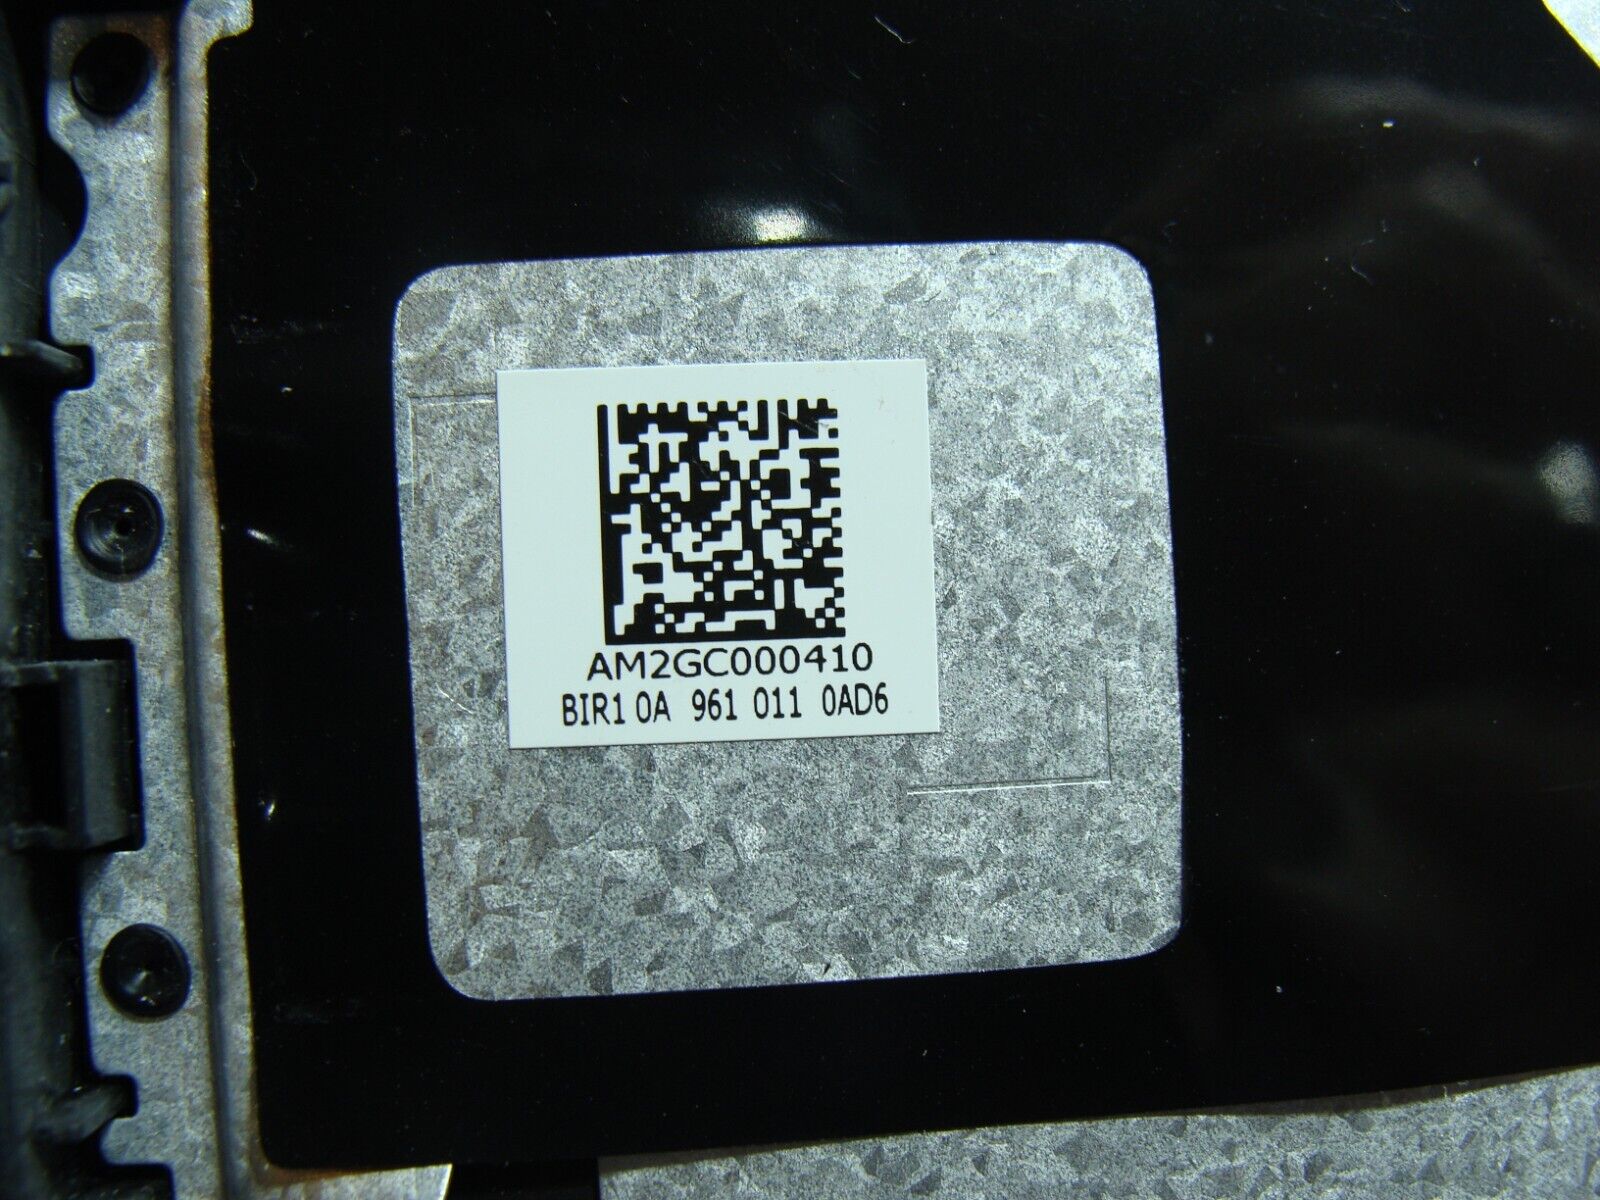 Lenovo IdeaPad S340-15IWL 15.6